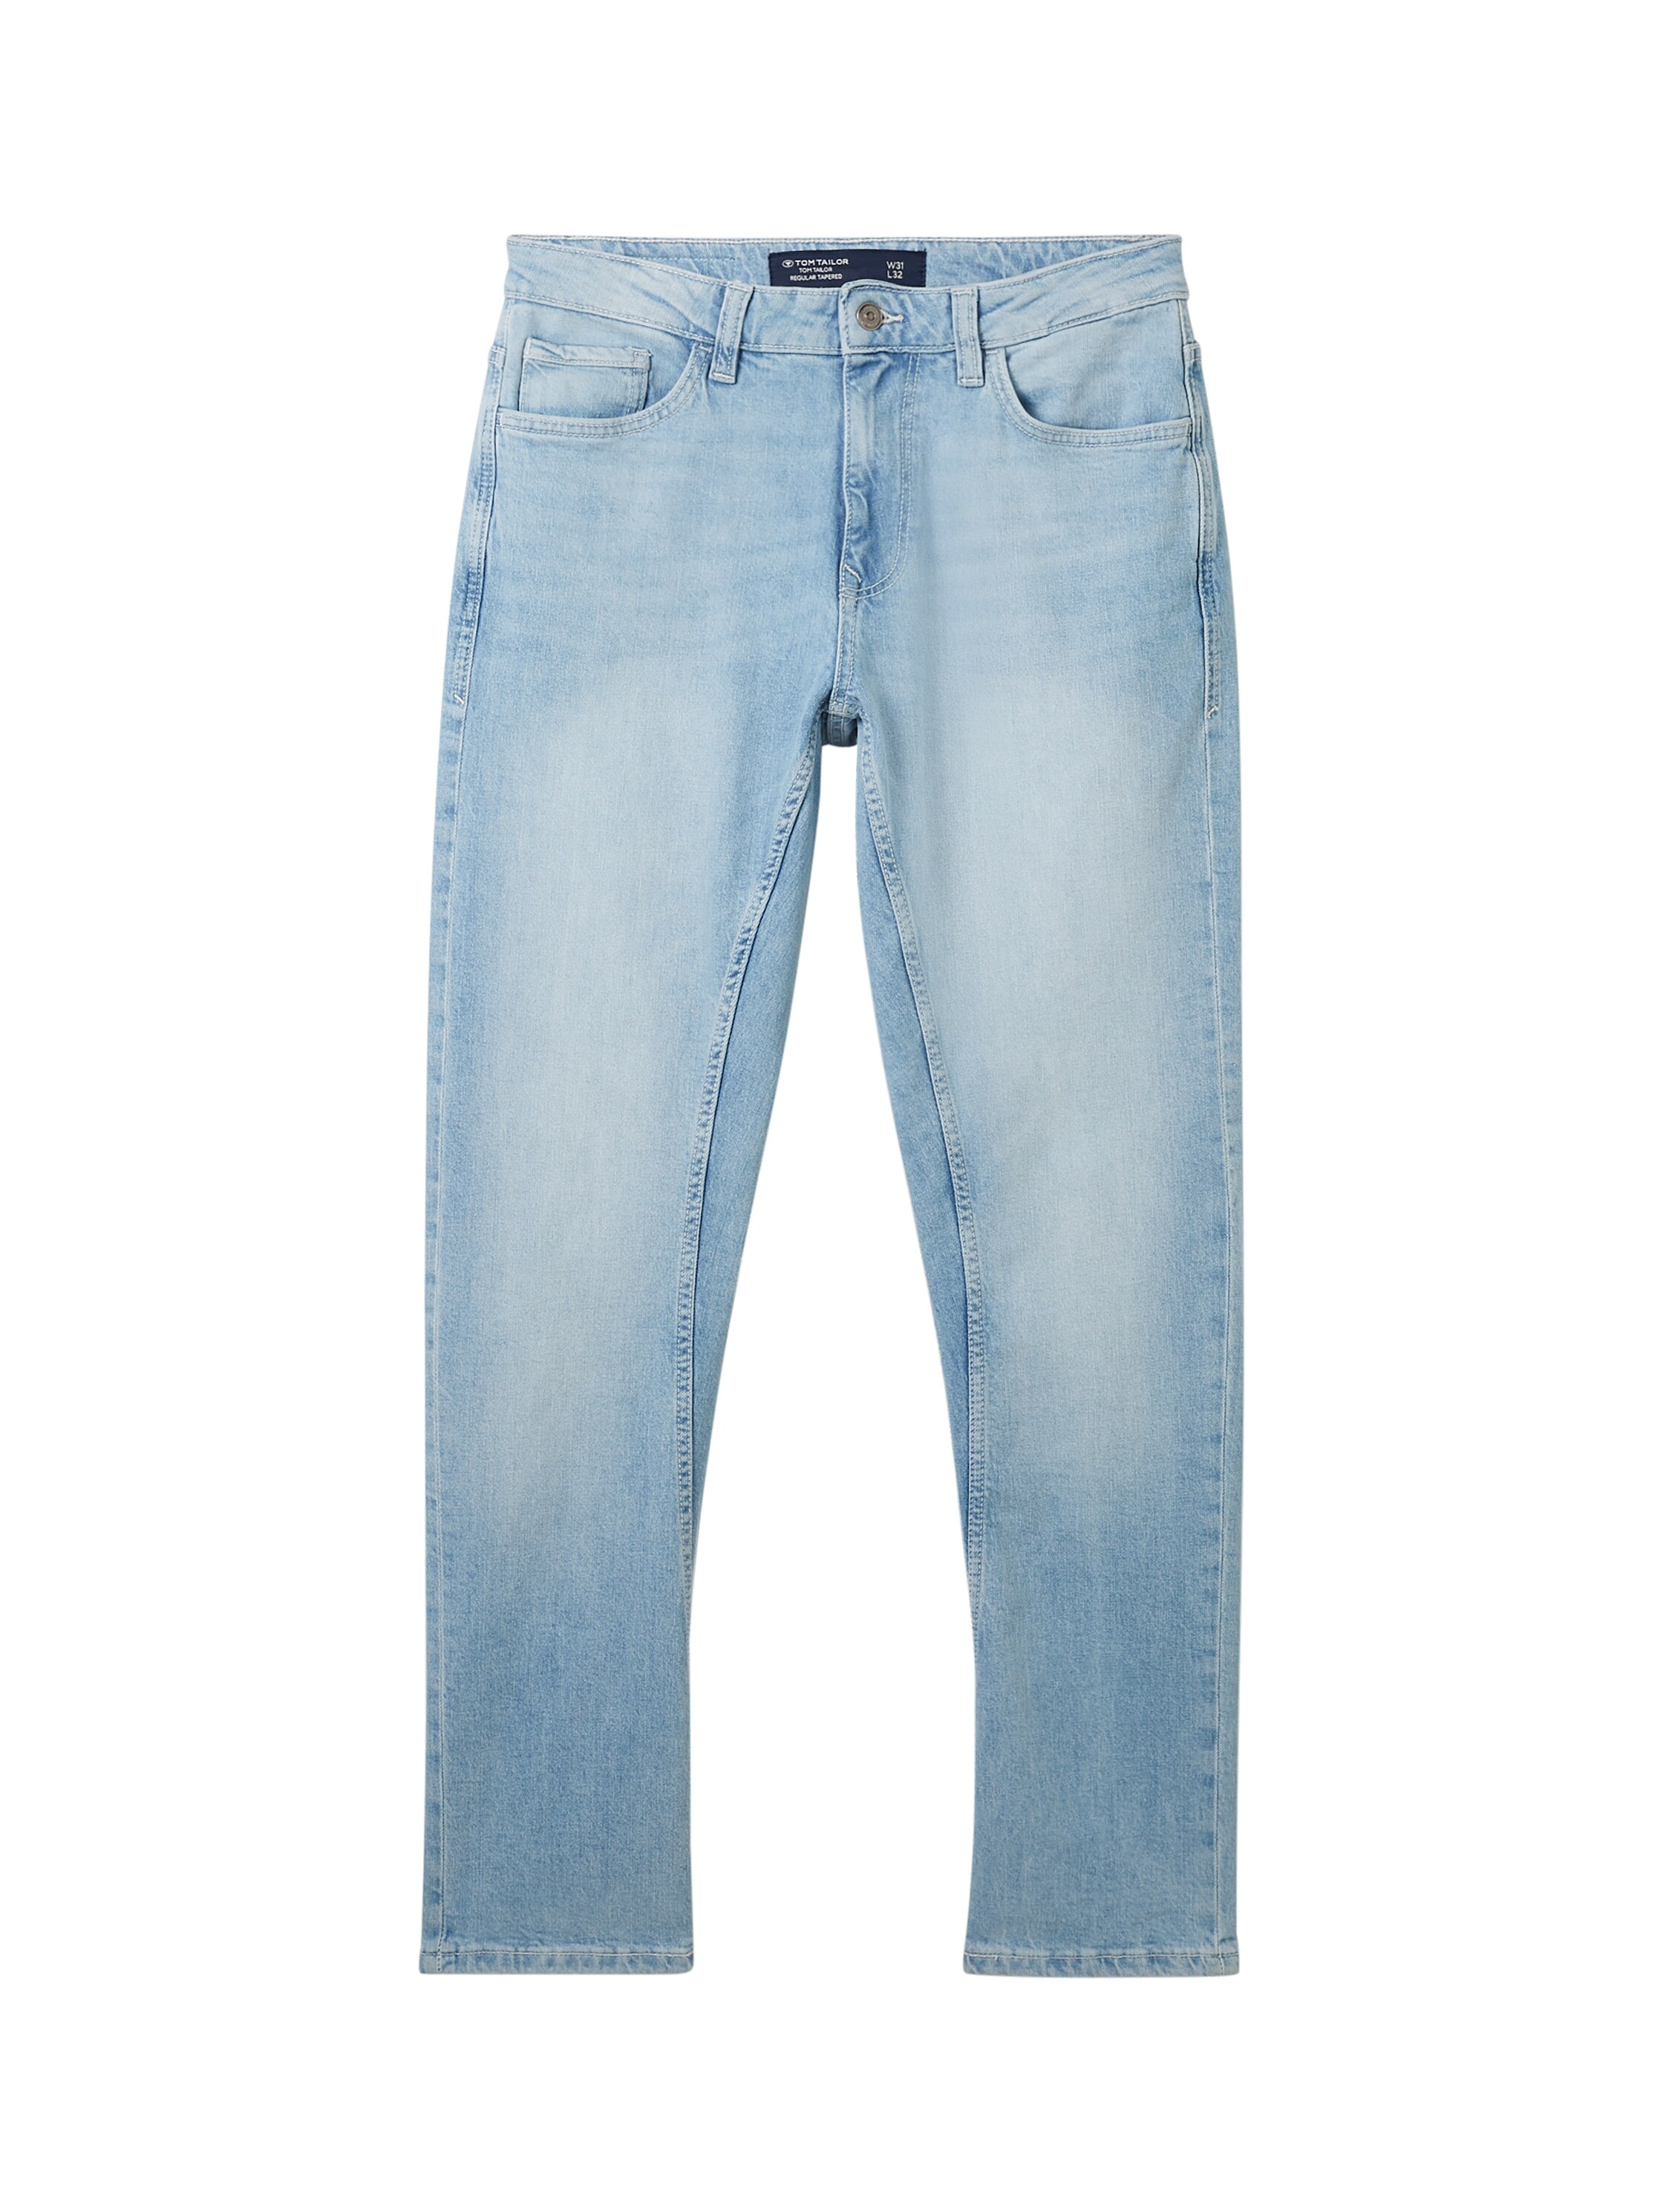 TOM TAILOR 5-Pocket-Jeans, mit klassischem 5-Pocket Style